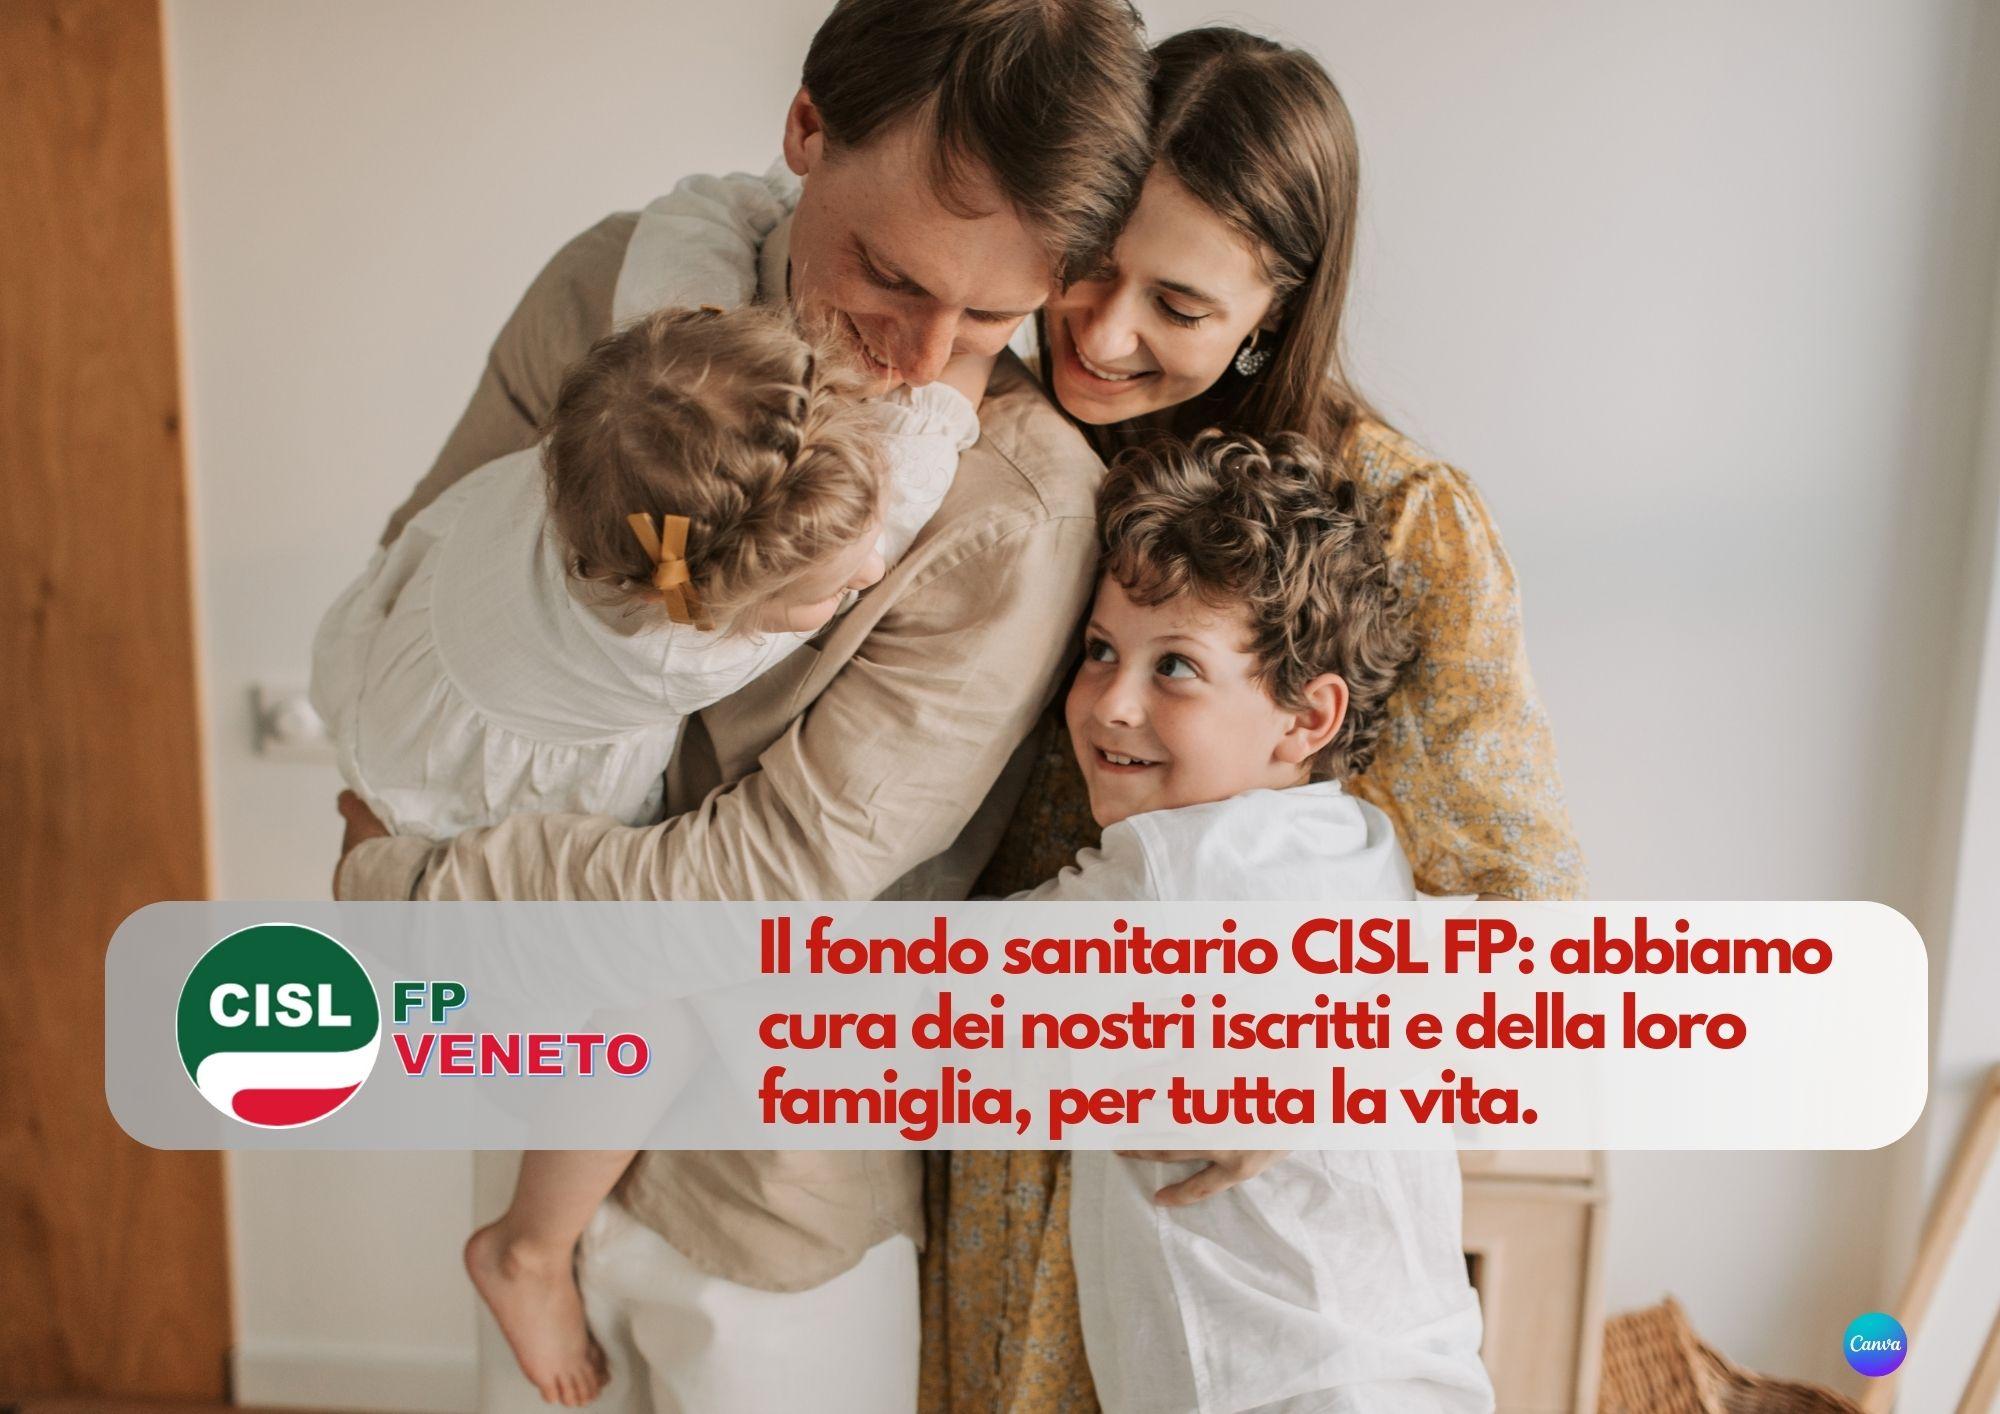 CISL FP Veneto. Nasce il Fondo Sanitario CISL FP. Anche con patologie pregresse, per tutta la vita